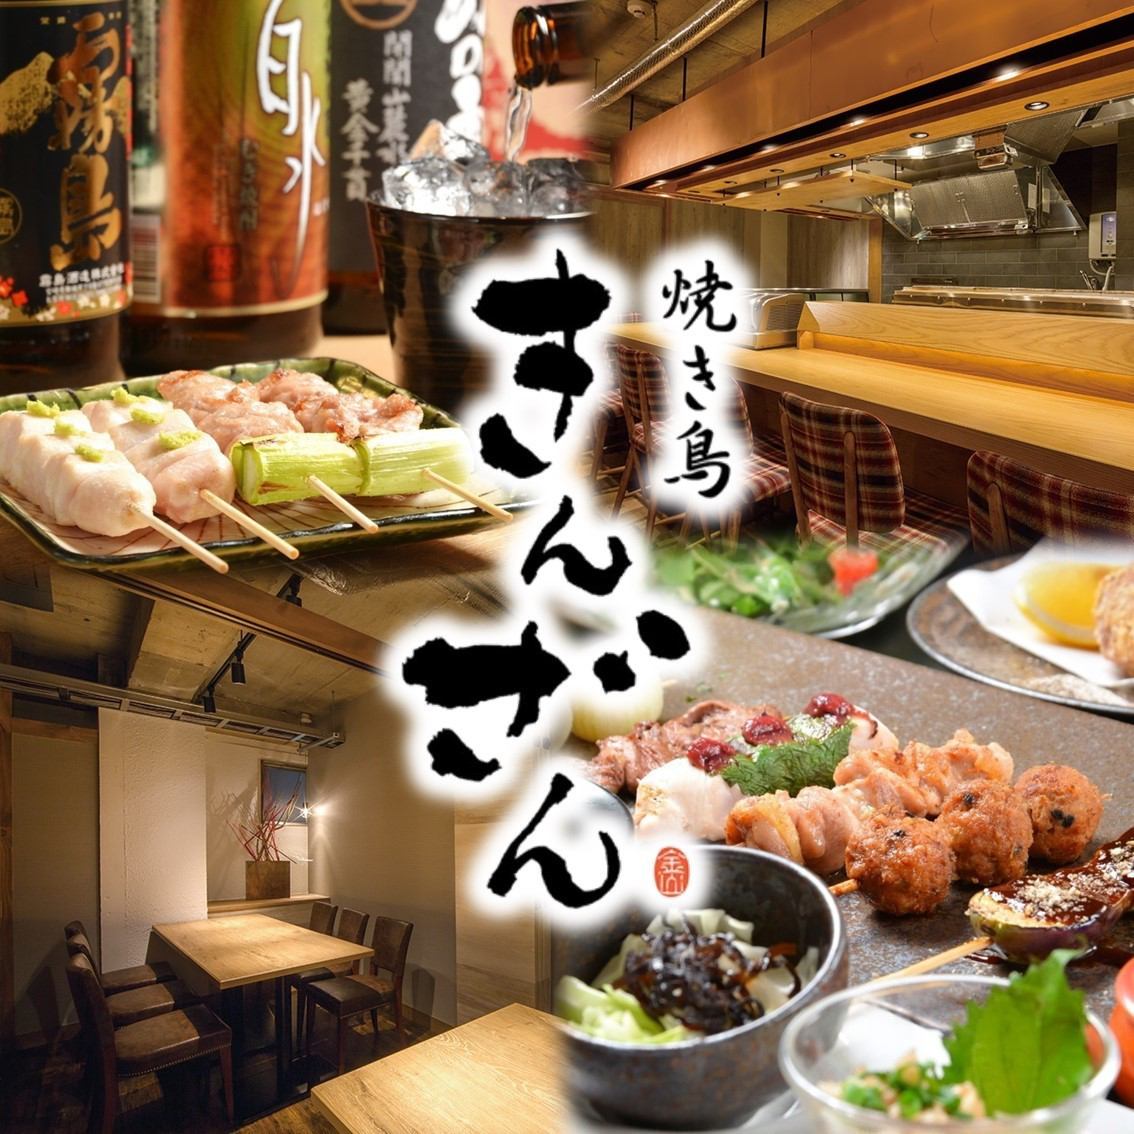 名古屋著名的烤鸡肉串餐厅“ Kinzan”♪在时尚的空间中品尝精致的烤鸡肉串♪